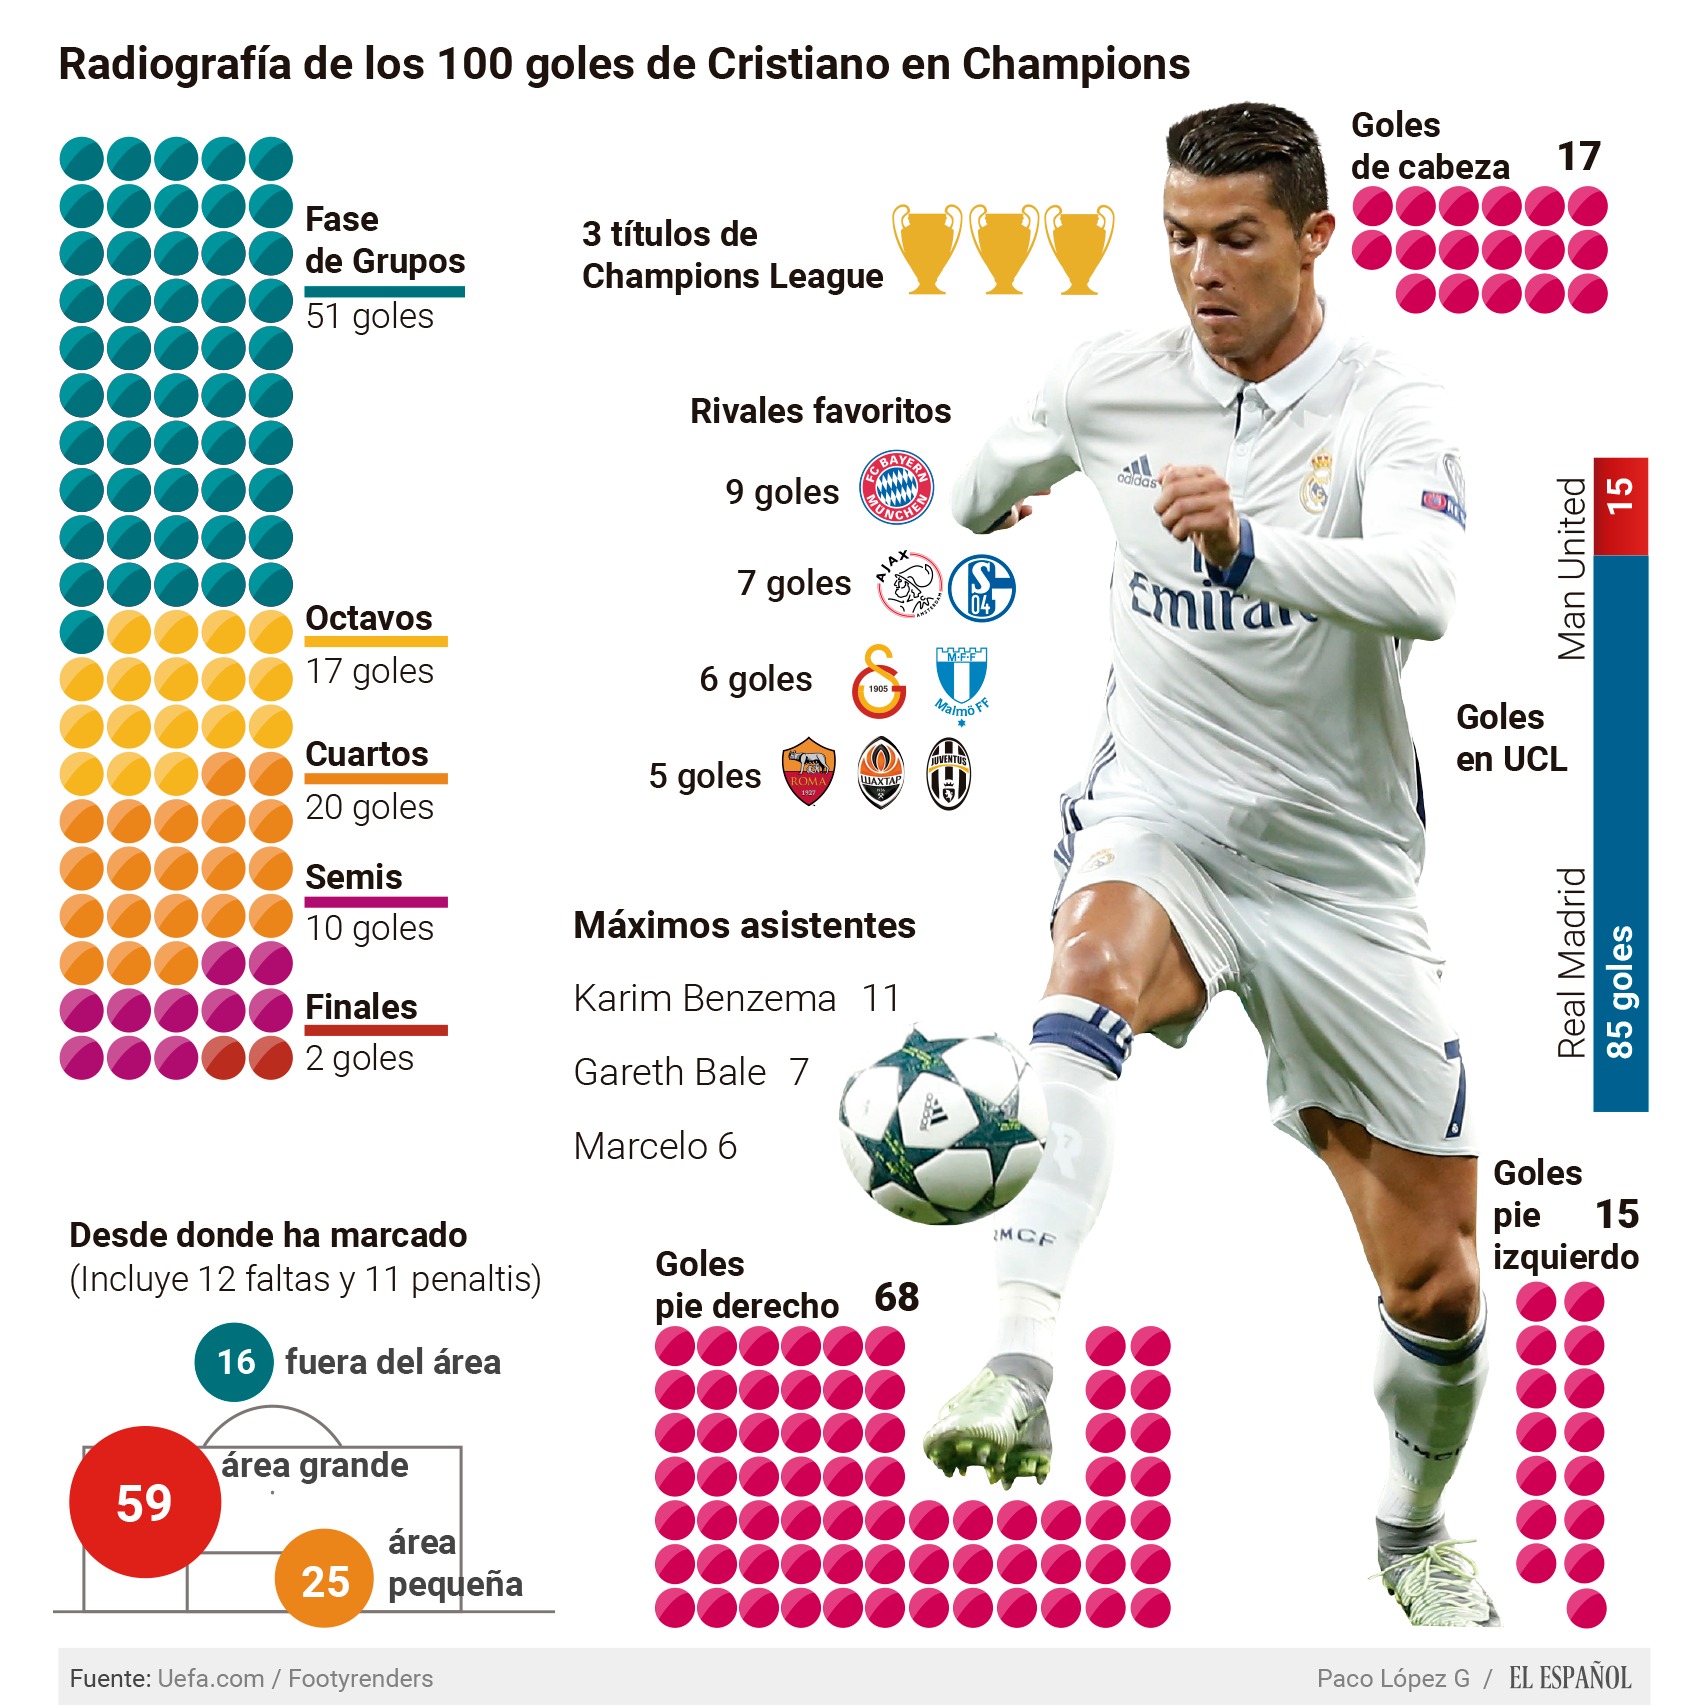 ¿Qué jugador ha marcado más goles en la Champions League